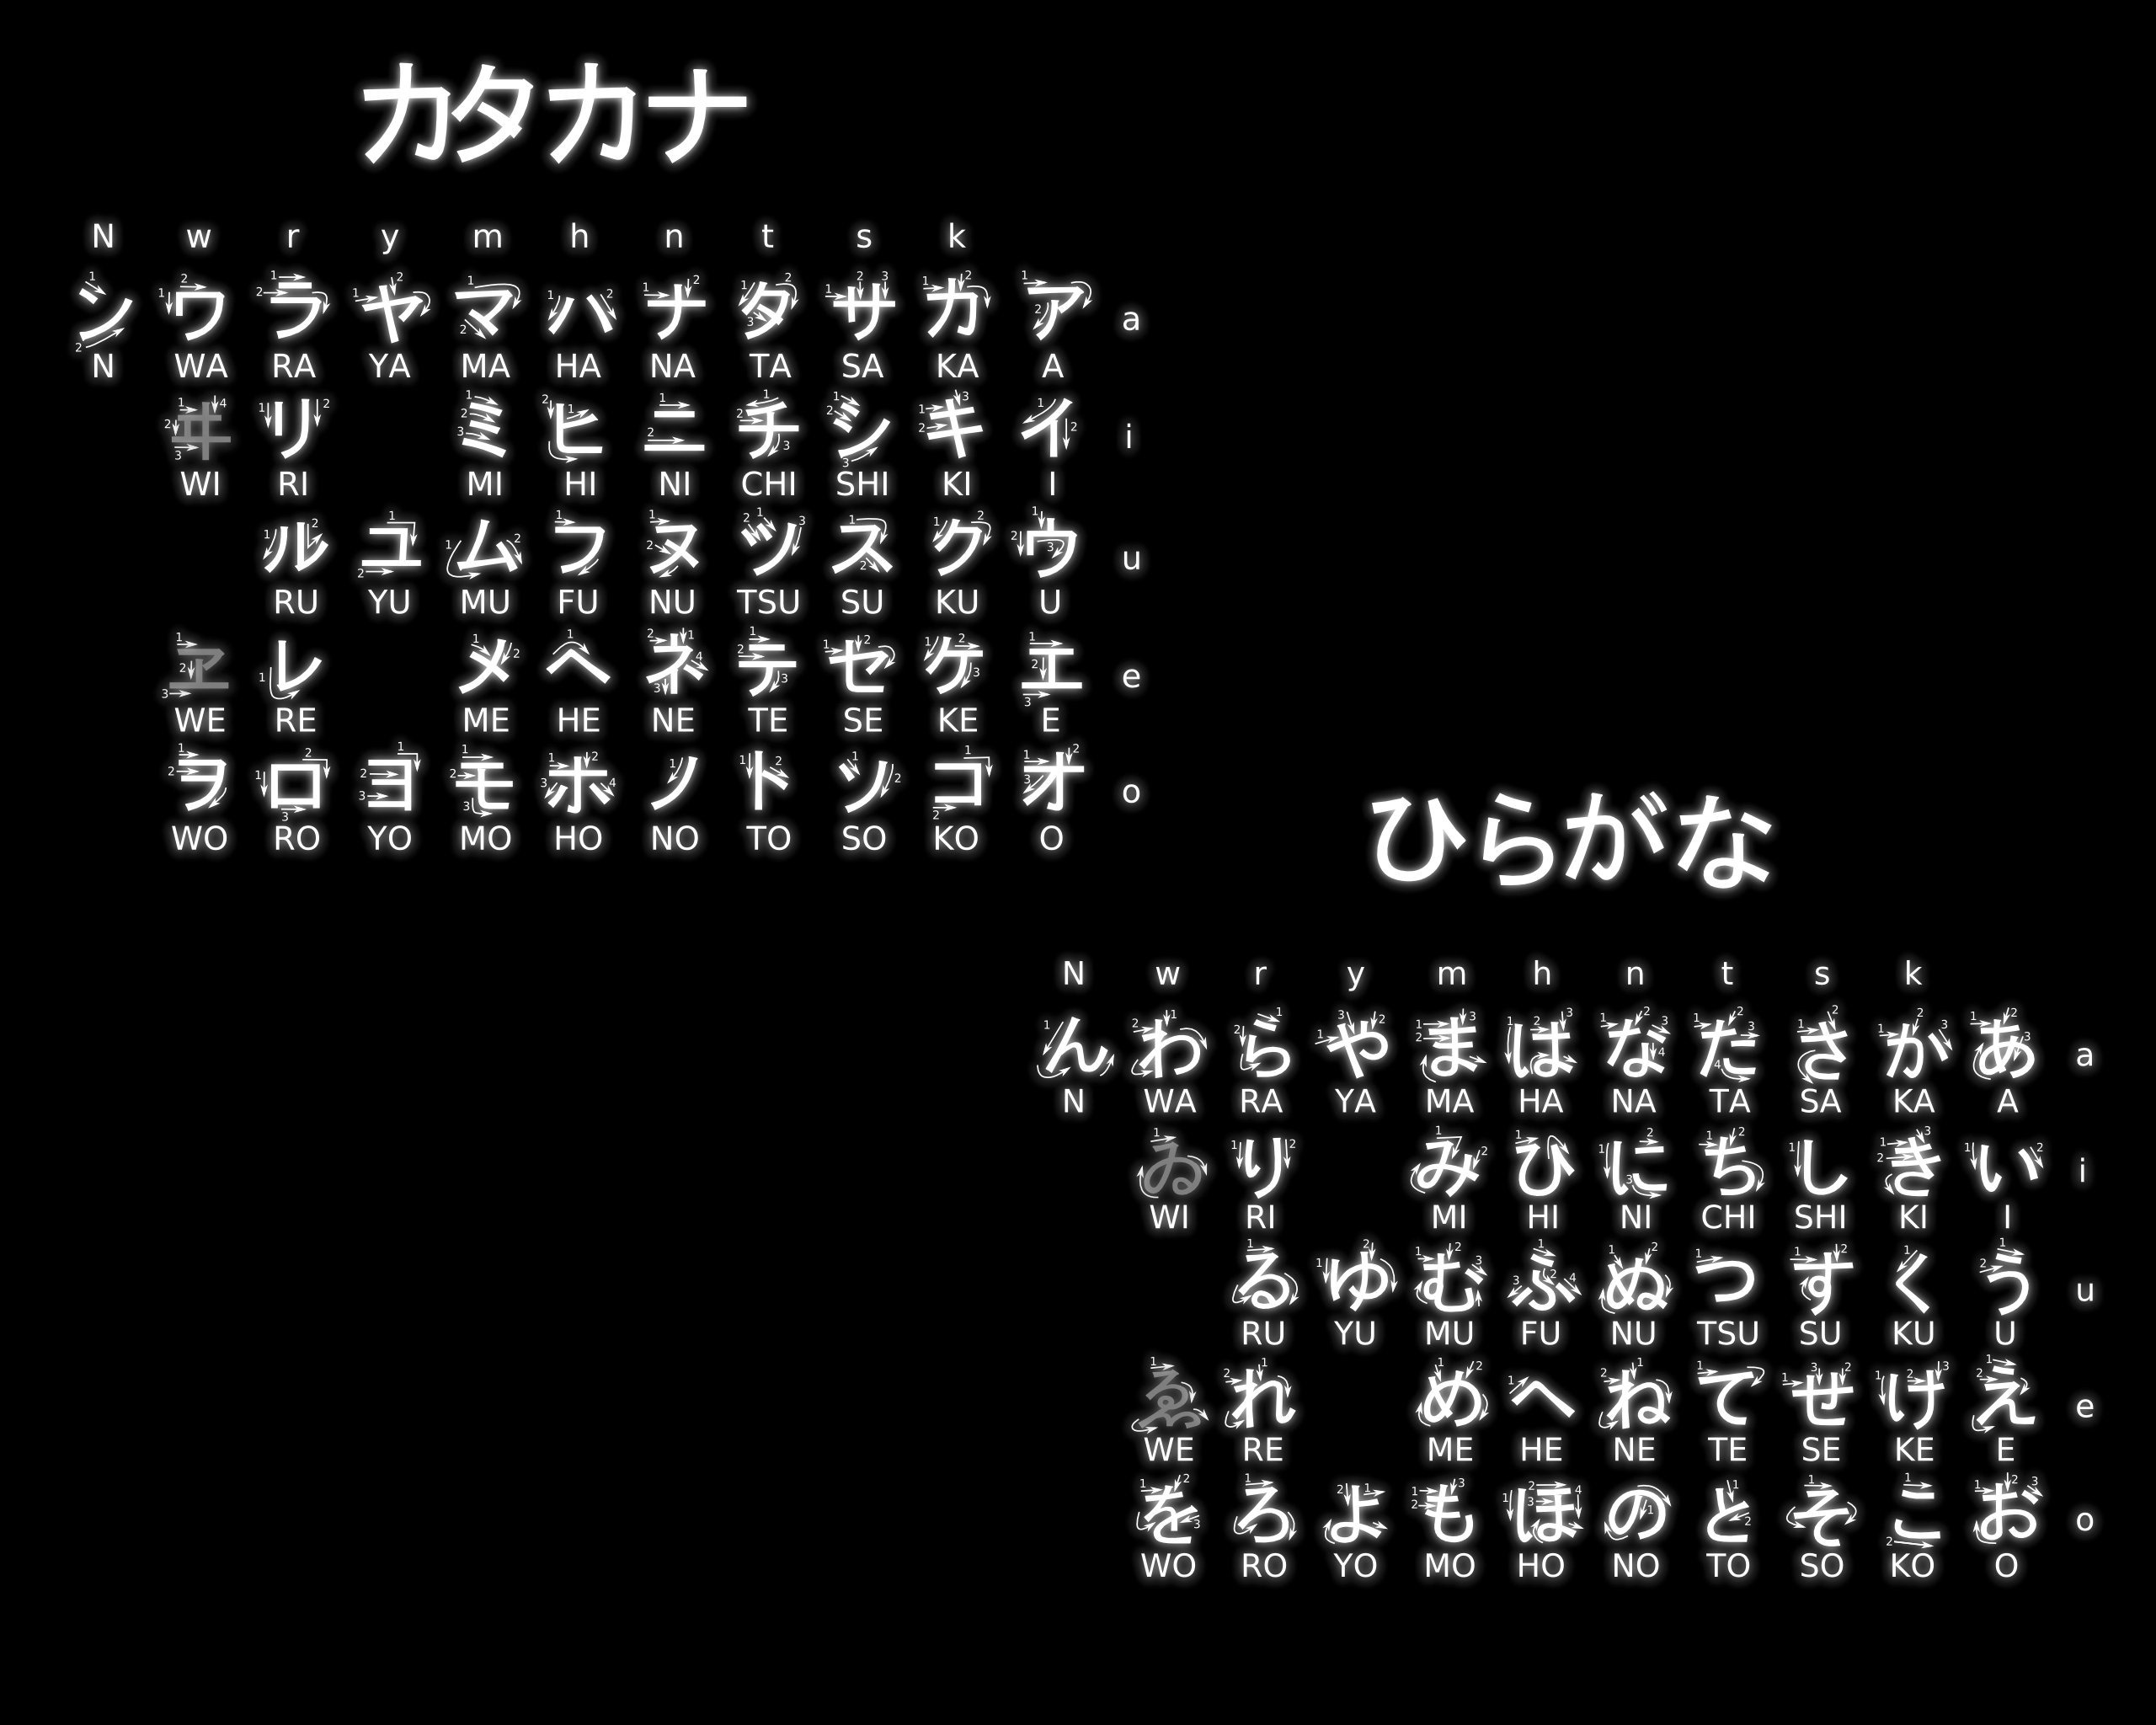 Japanese Hiragana Chart Wallpaper Top